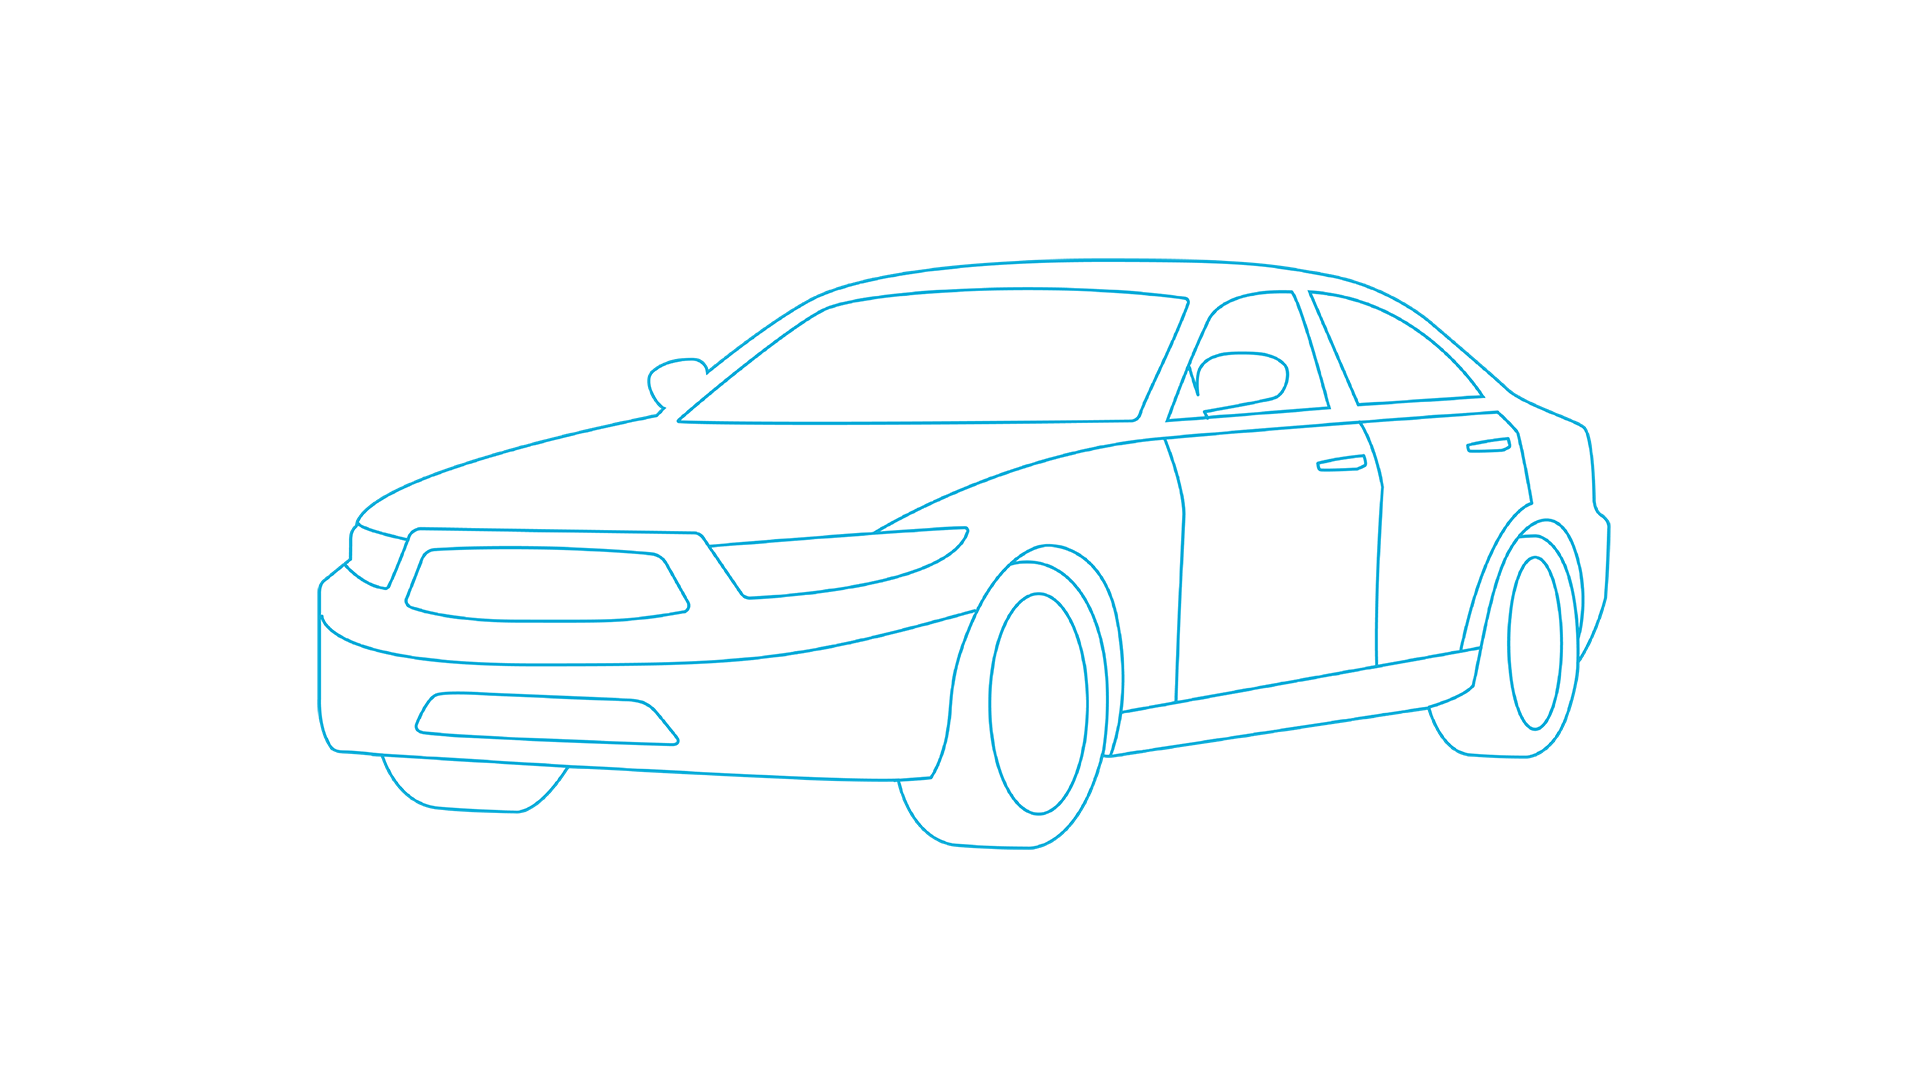 FIAT 500e model image.